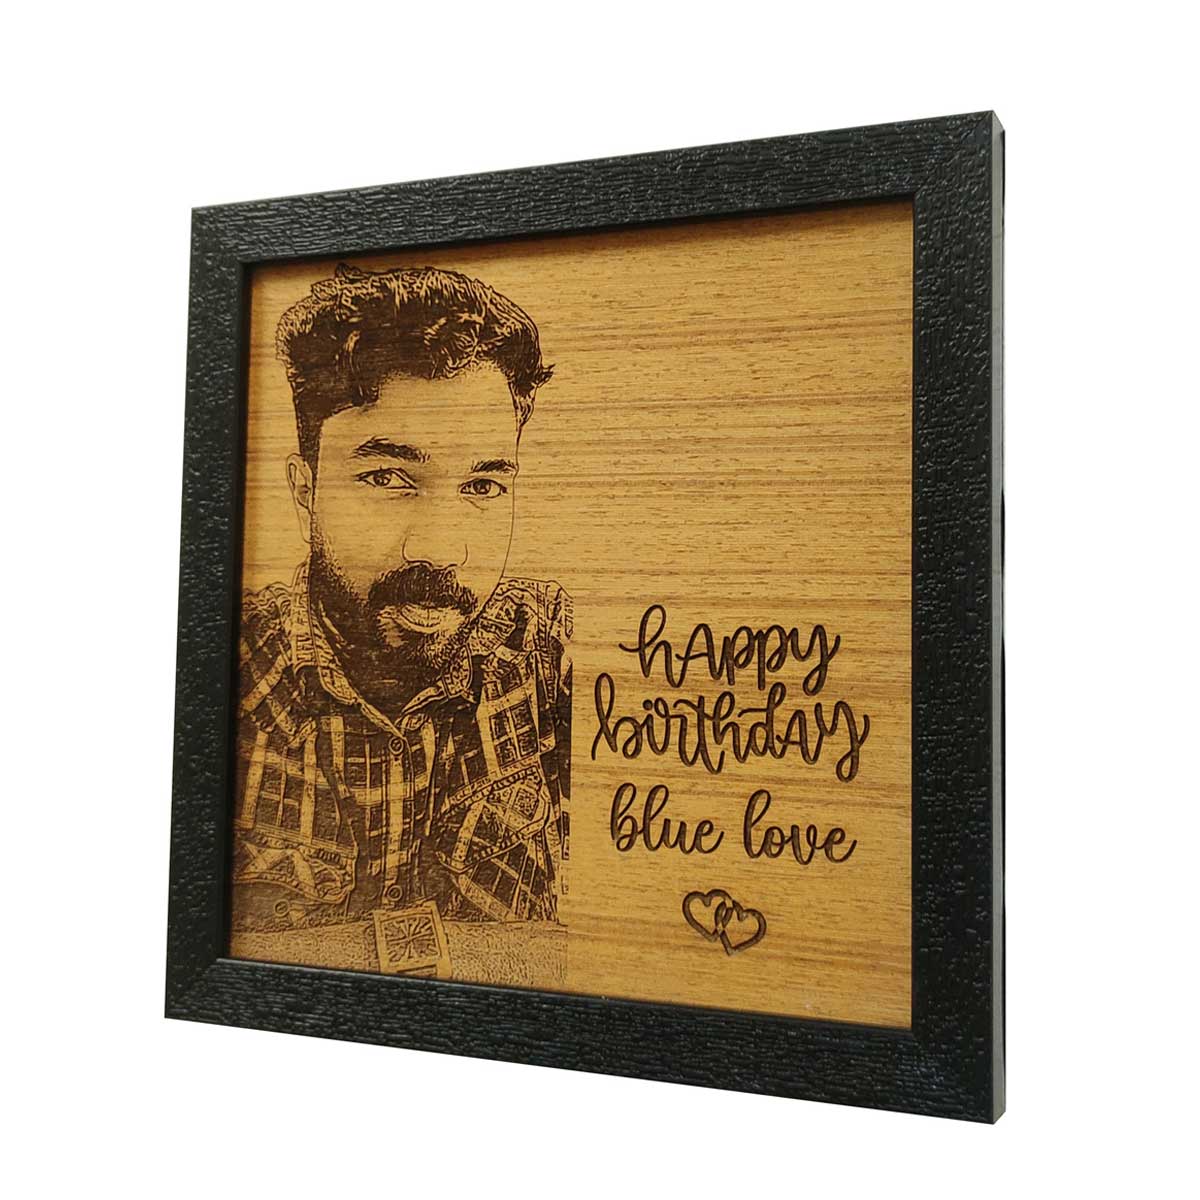 Customized Wood Engraved Photo Frame Gift